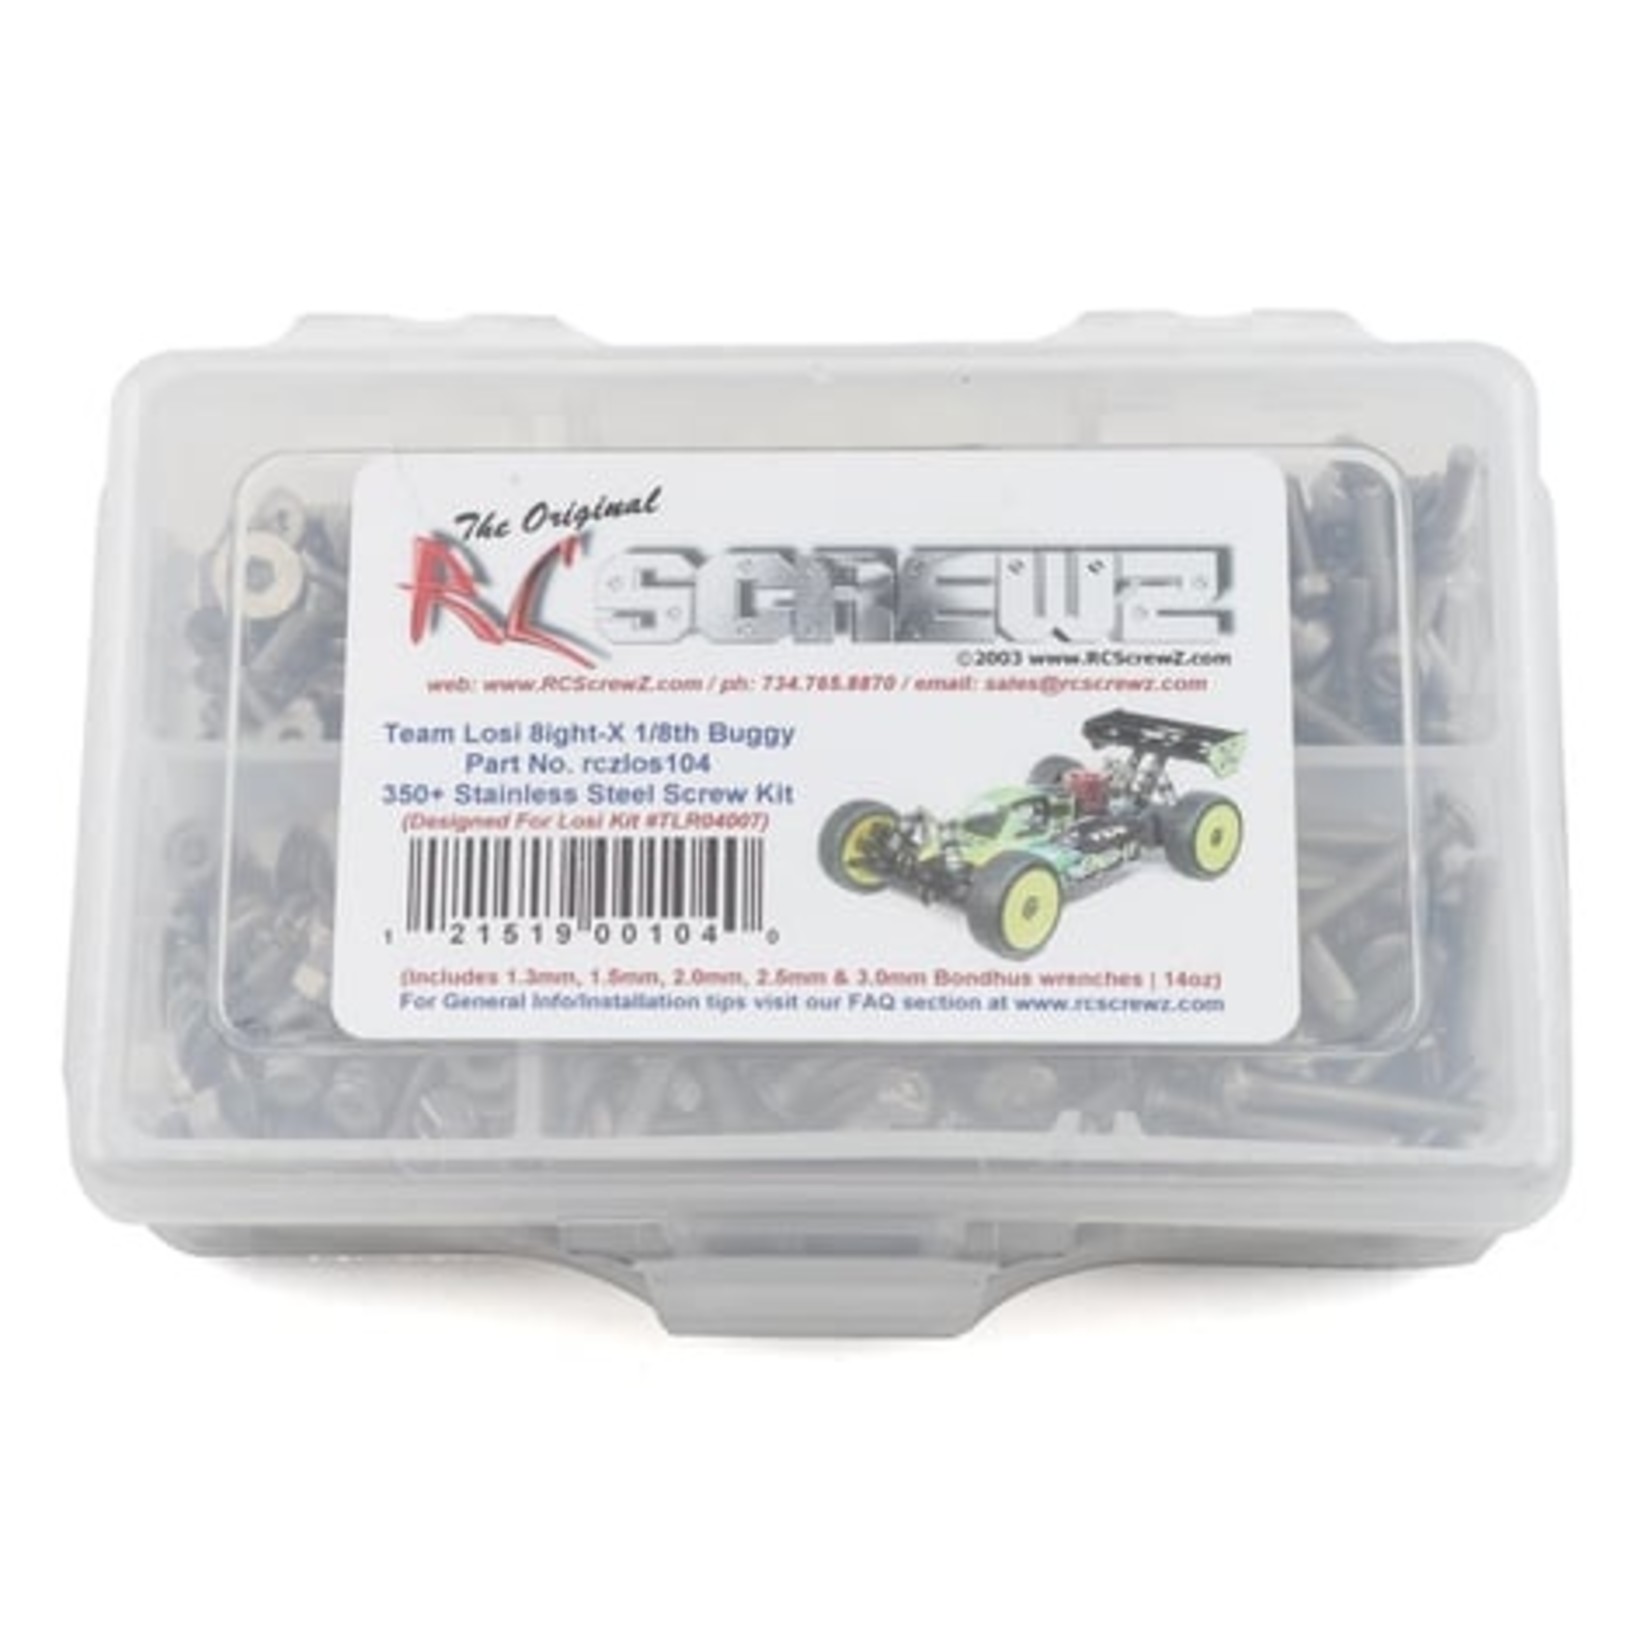 RC Screwz RCZLOS104  RC Screwz TLR 8IGHT-X Stainless Steel Screw Kit